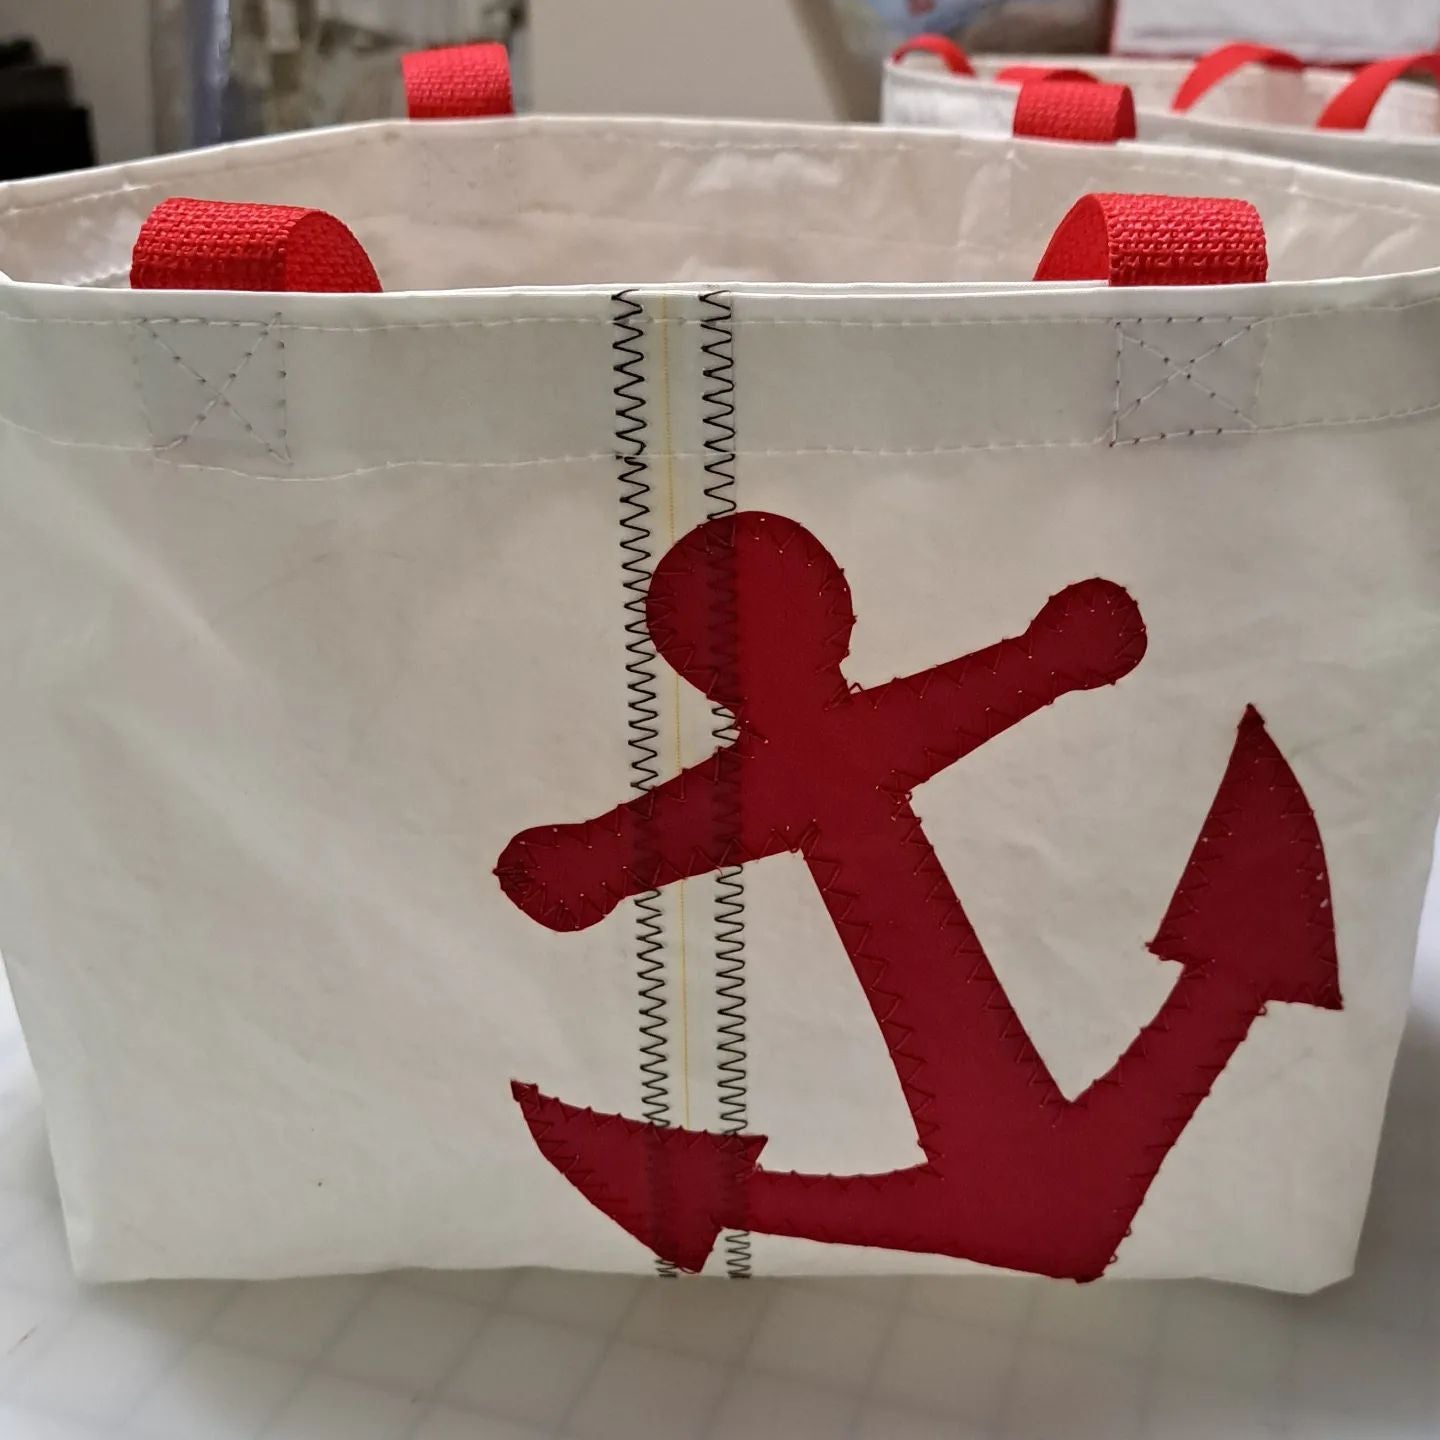 Recycled Sail Handbag, Sailcloth Tote, Red Star